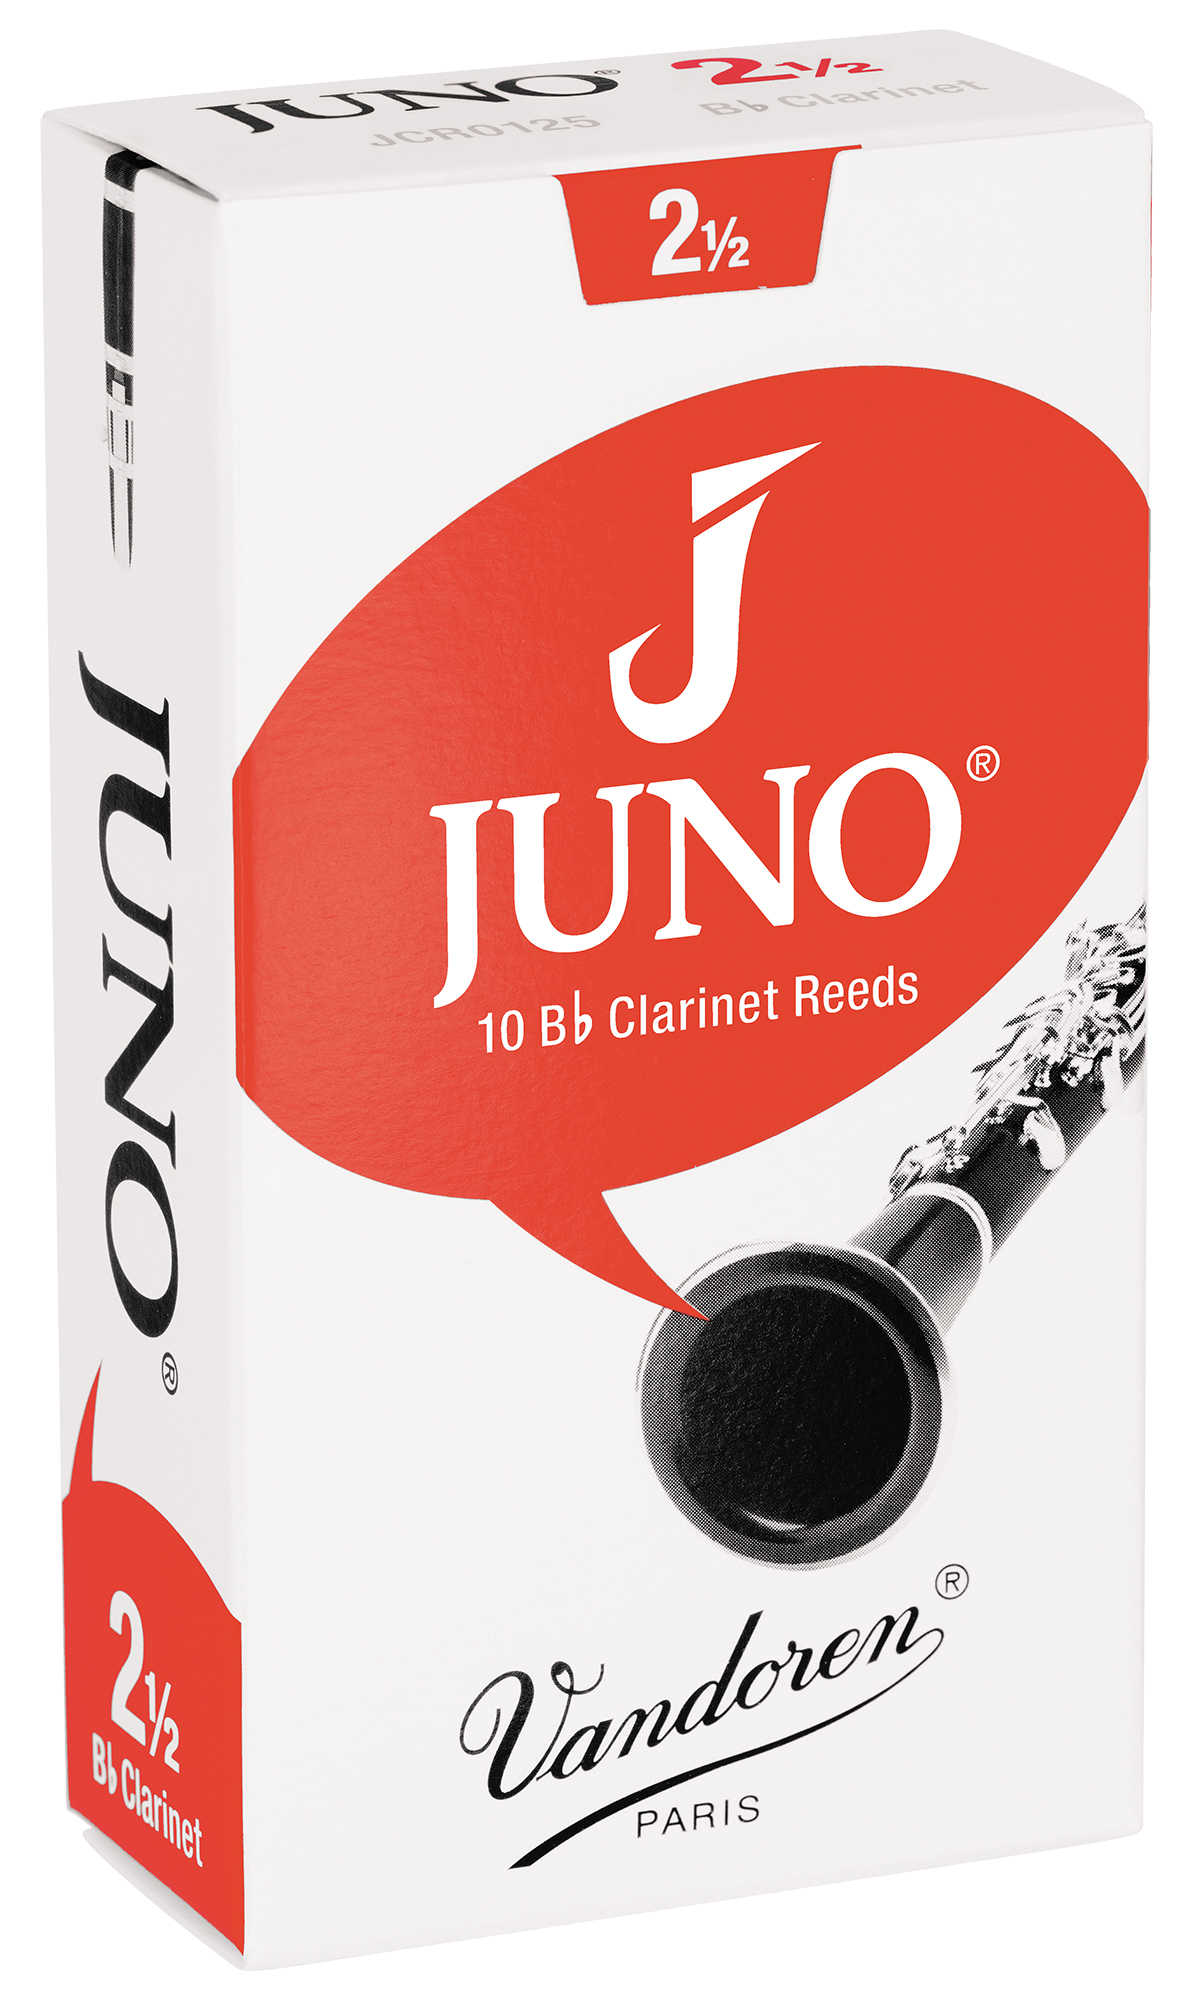 バンドーレンのビギナー向けリード「JUNO」_The Clarinet ONLINE